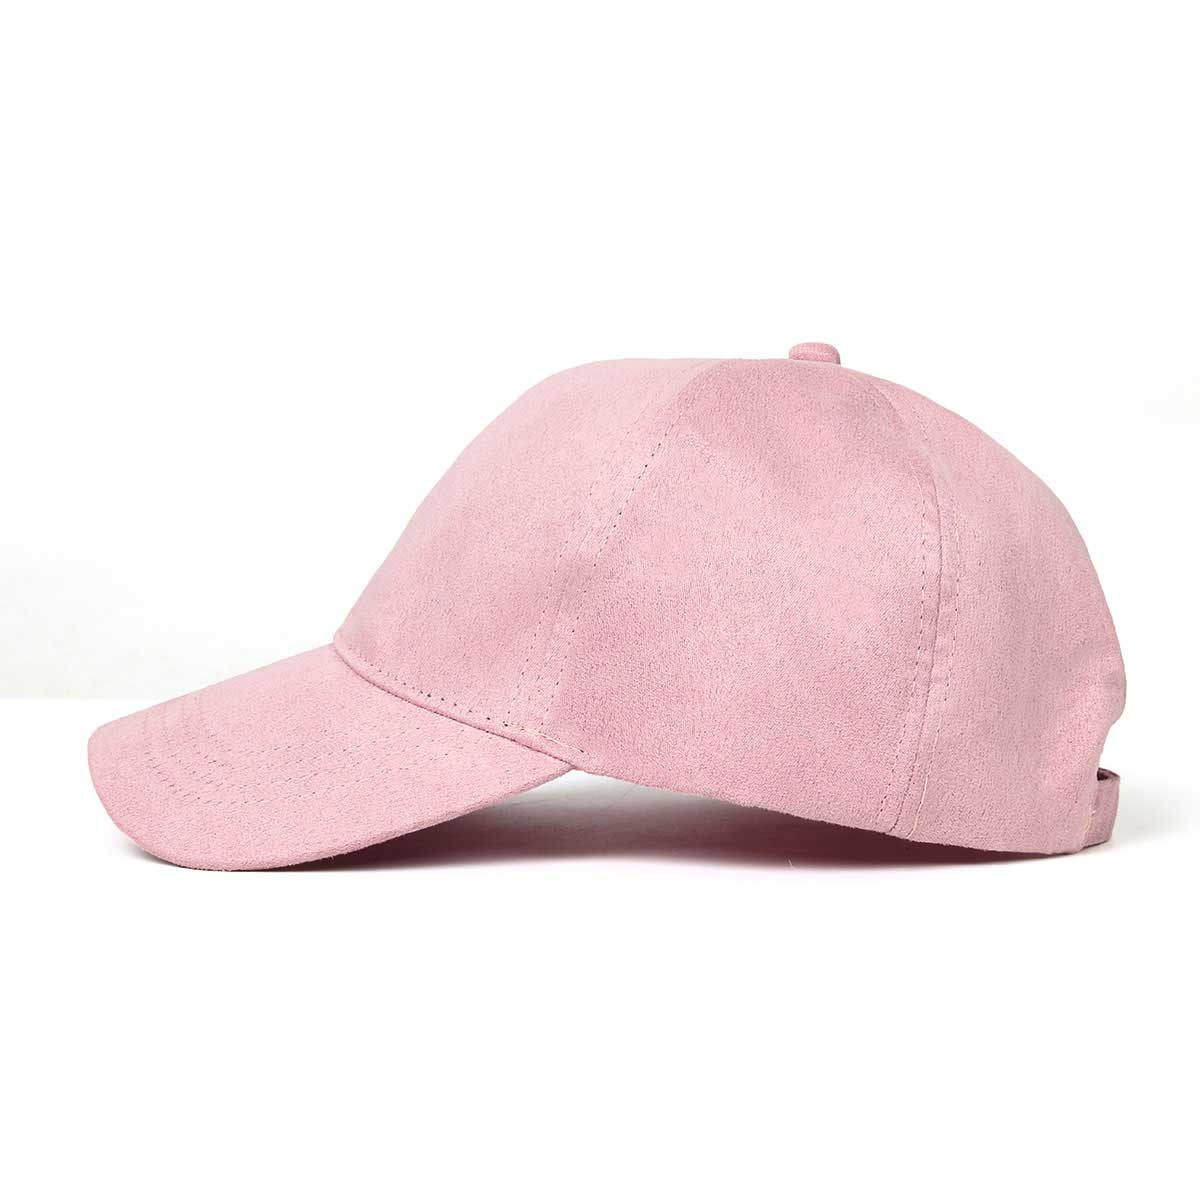 gorra de béisbol hombres mujeres - clásico ajustable Sombrero liso